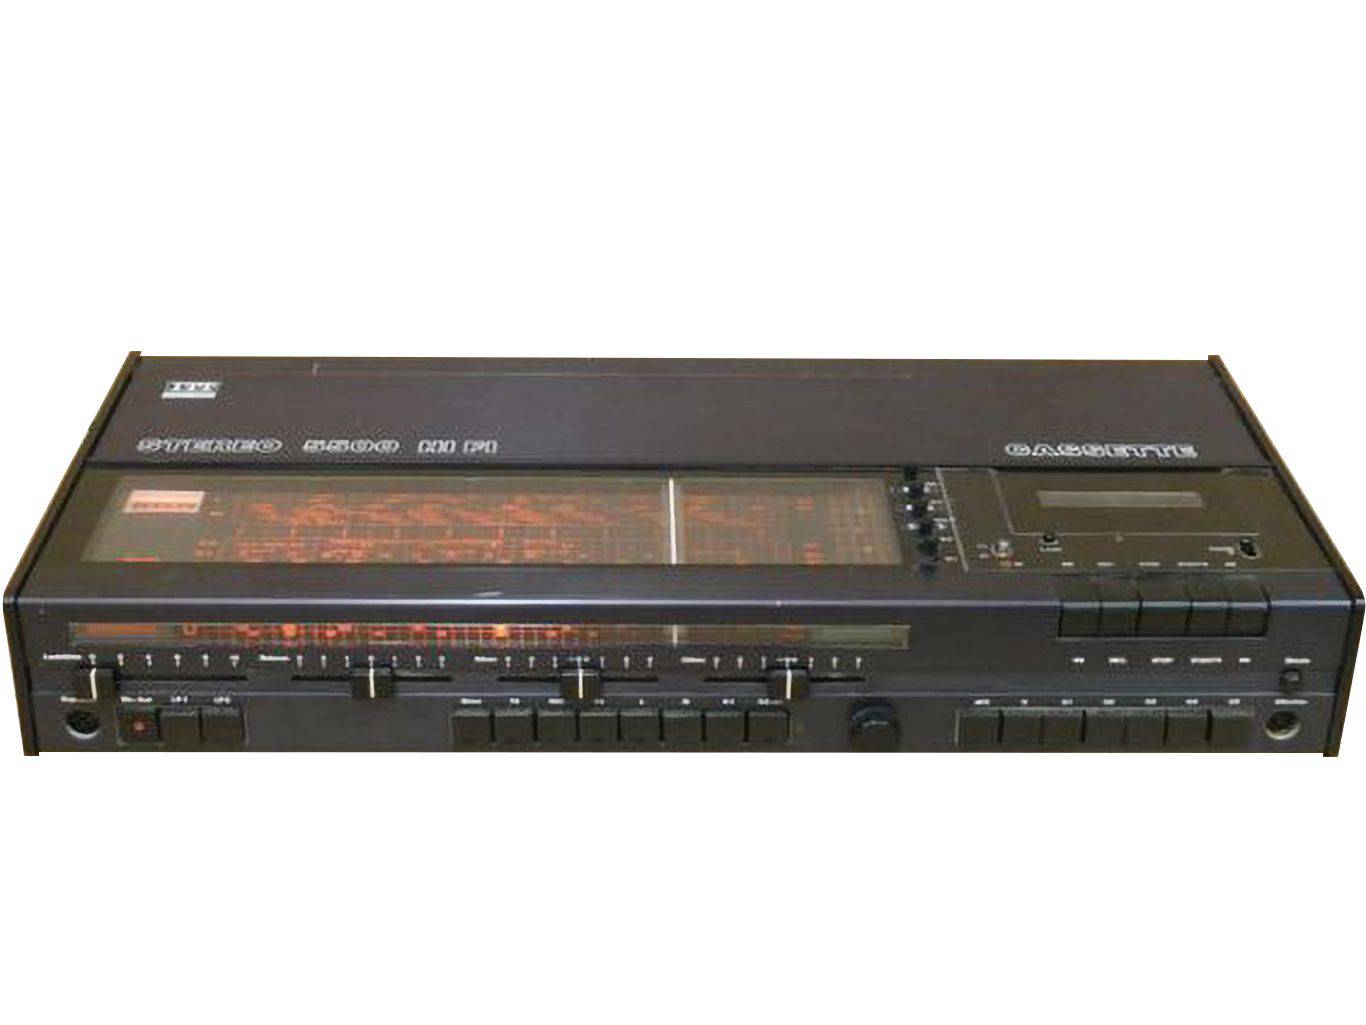 ITT Stereo 5500 HiFi Cassette